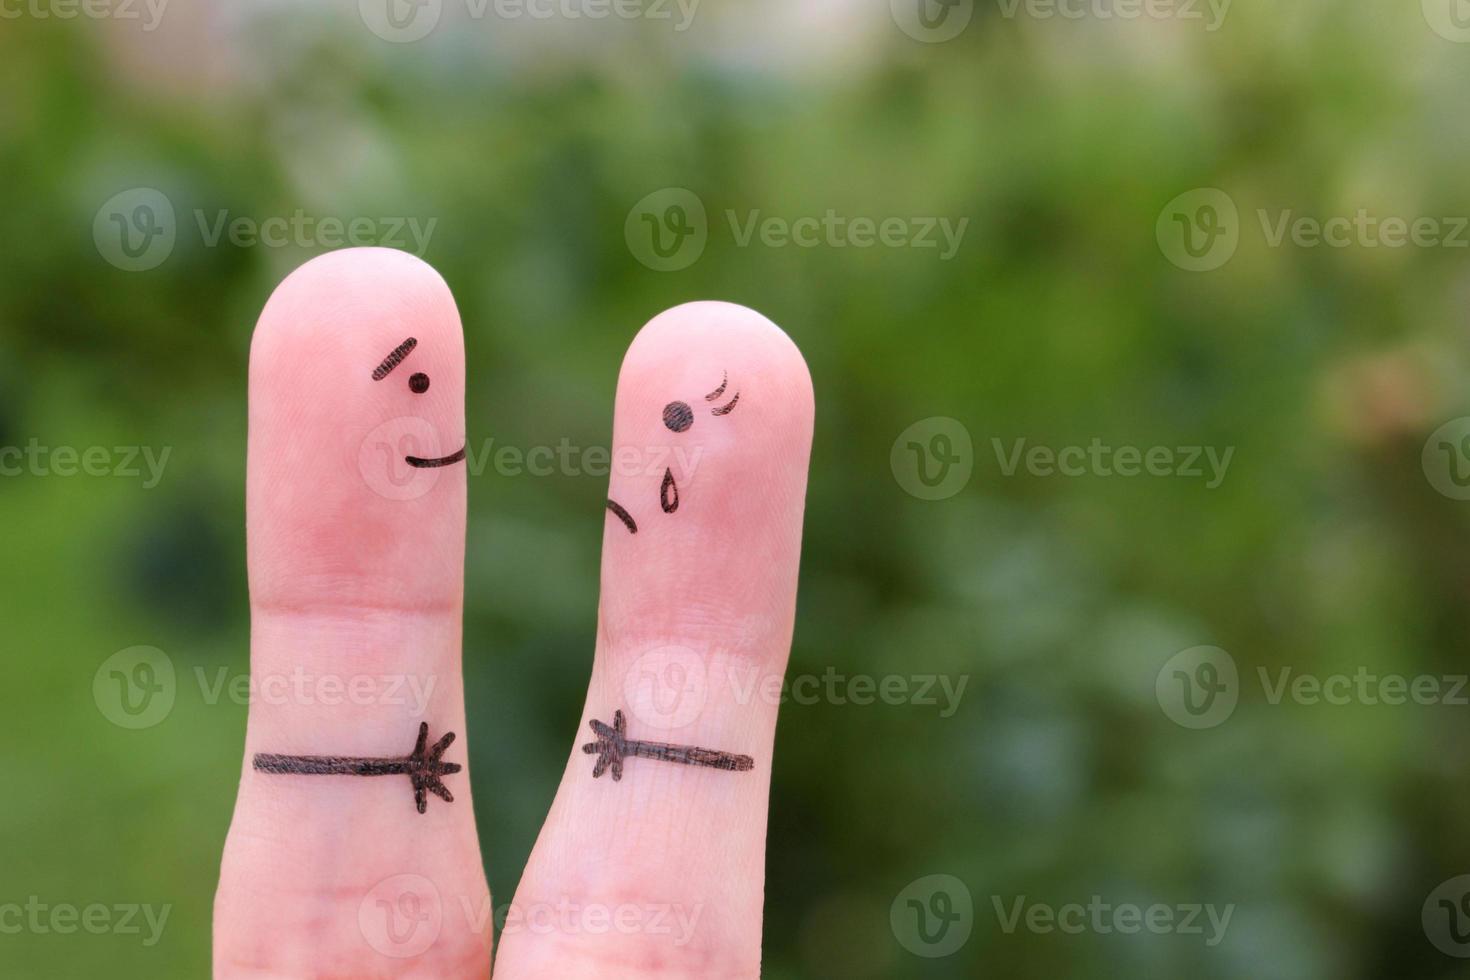 dita arte di coppia incontrato dopo un' lungo separazione. foto